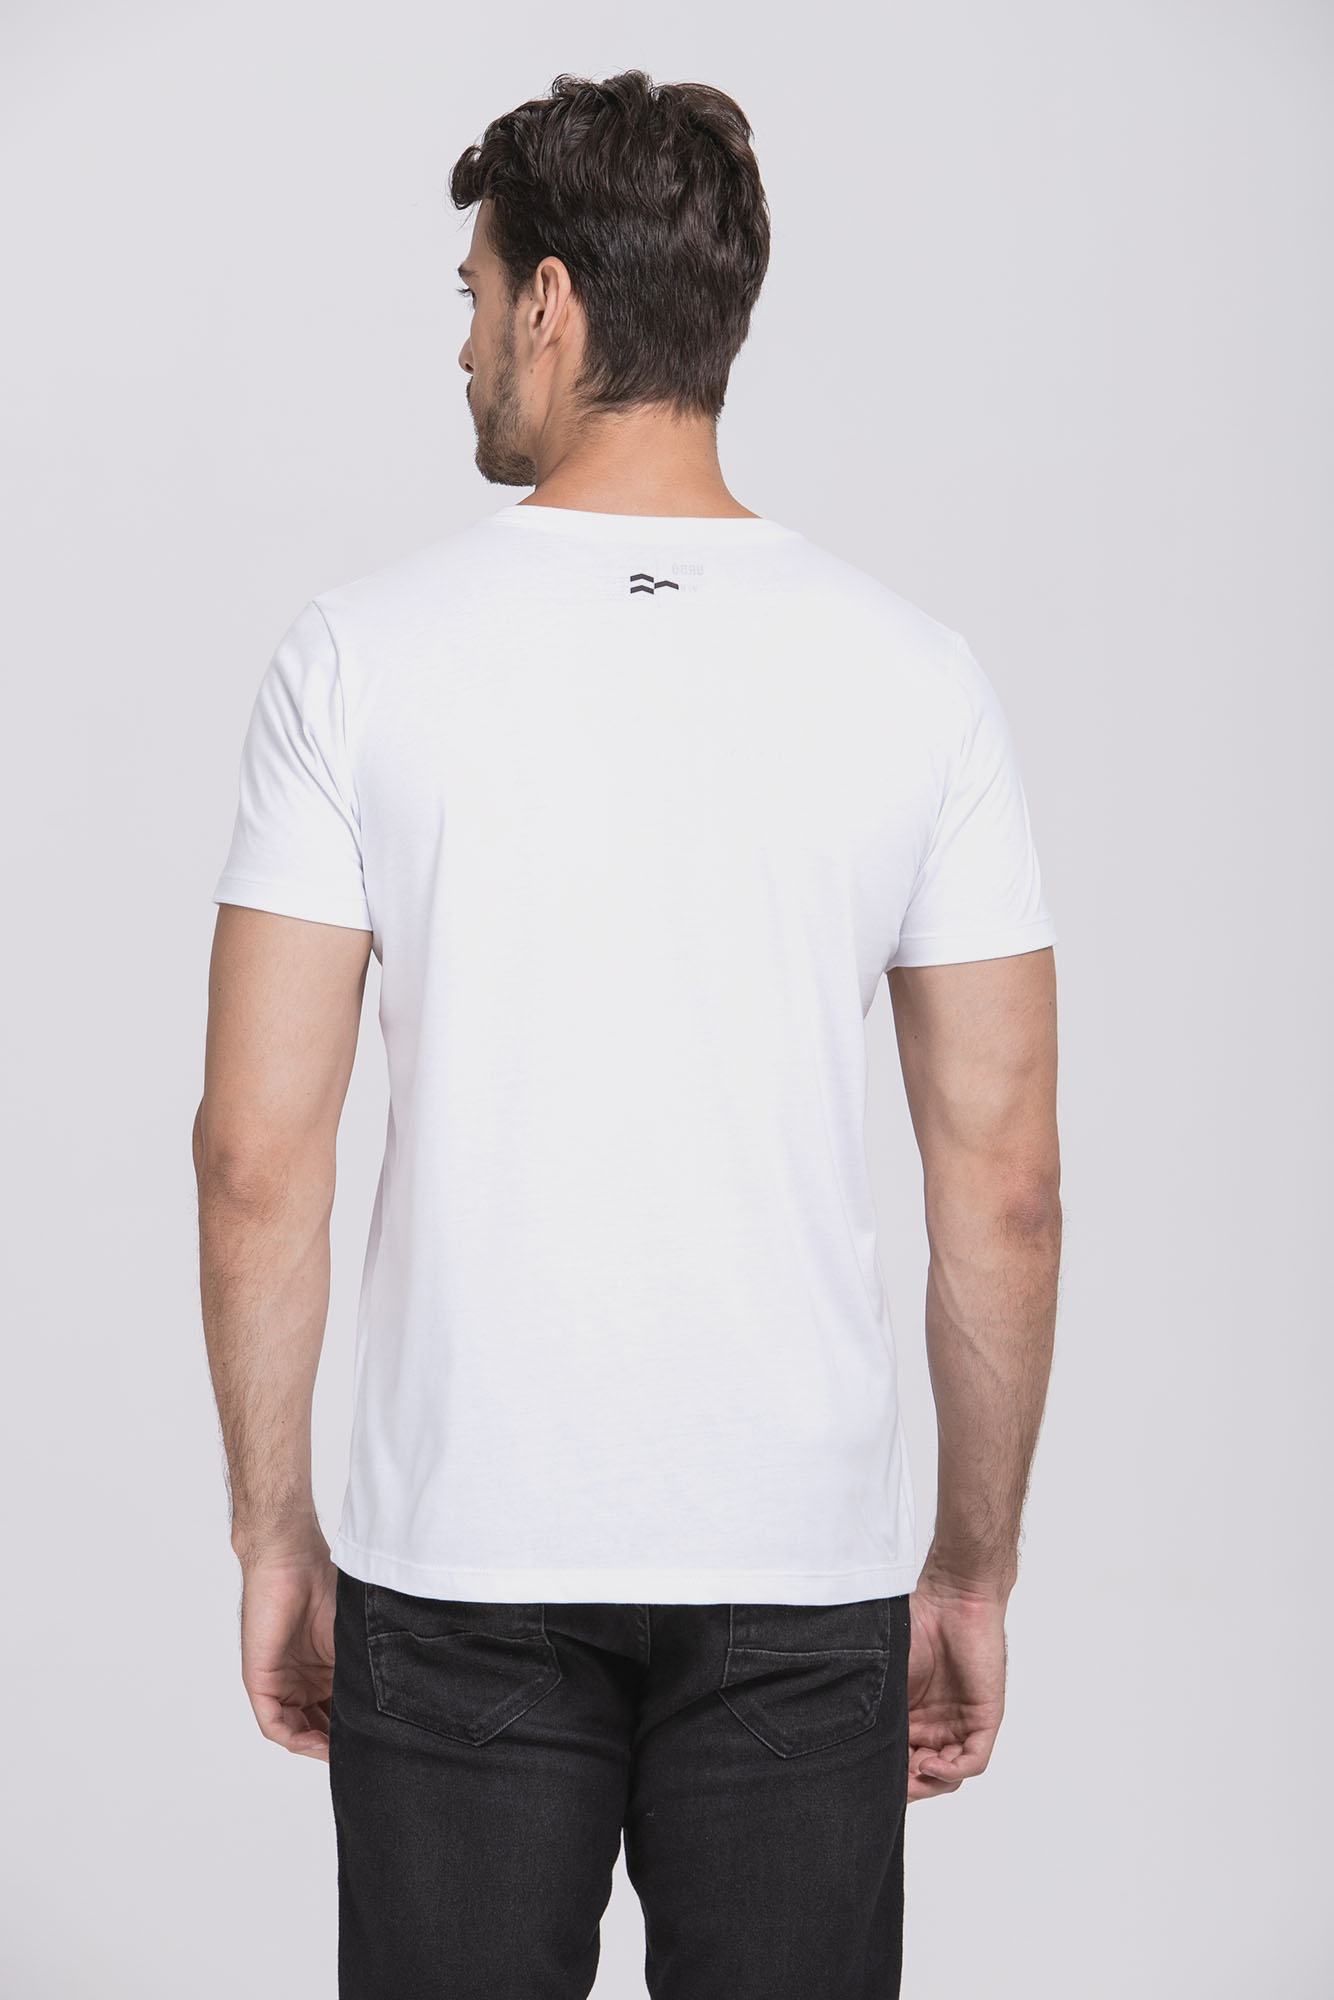 Camiseta Cotton Egypt Branco/Preto